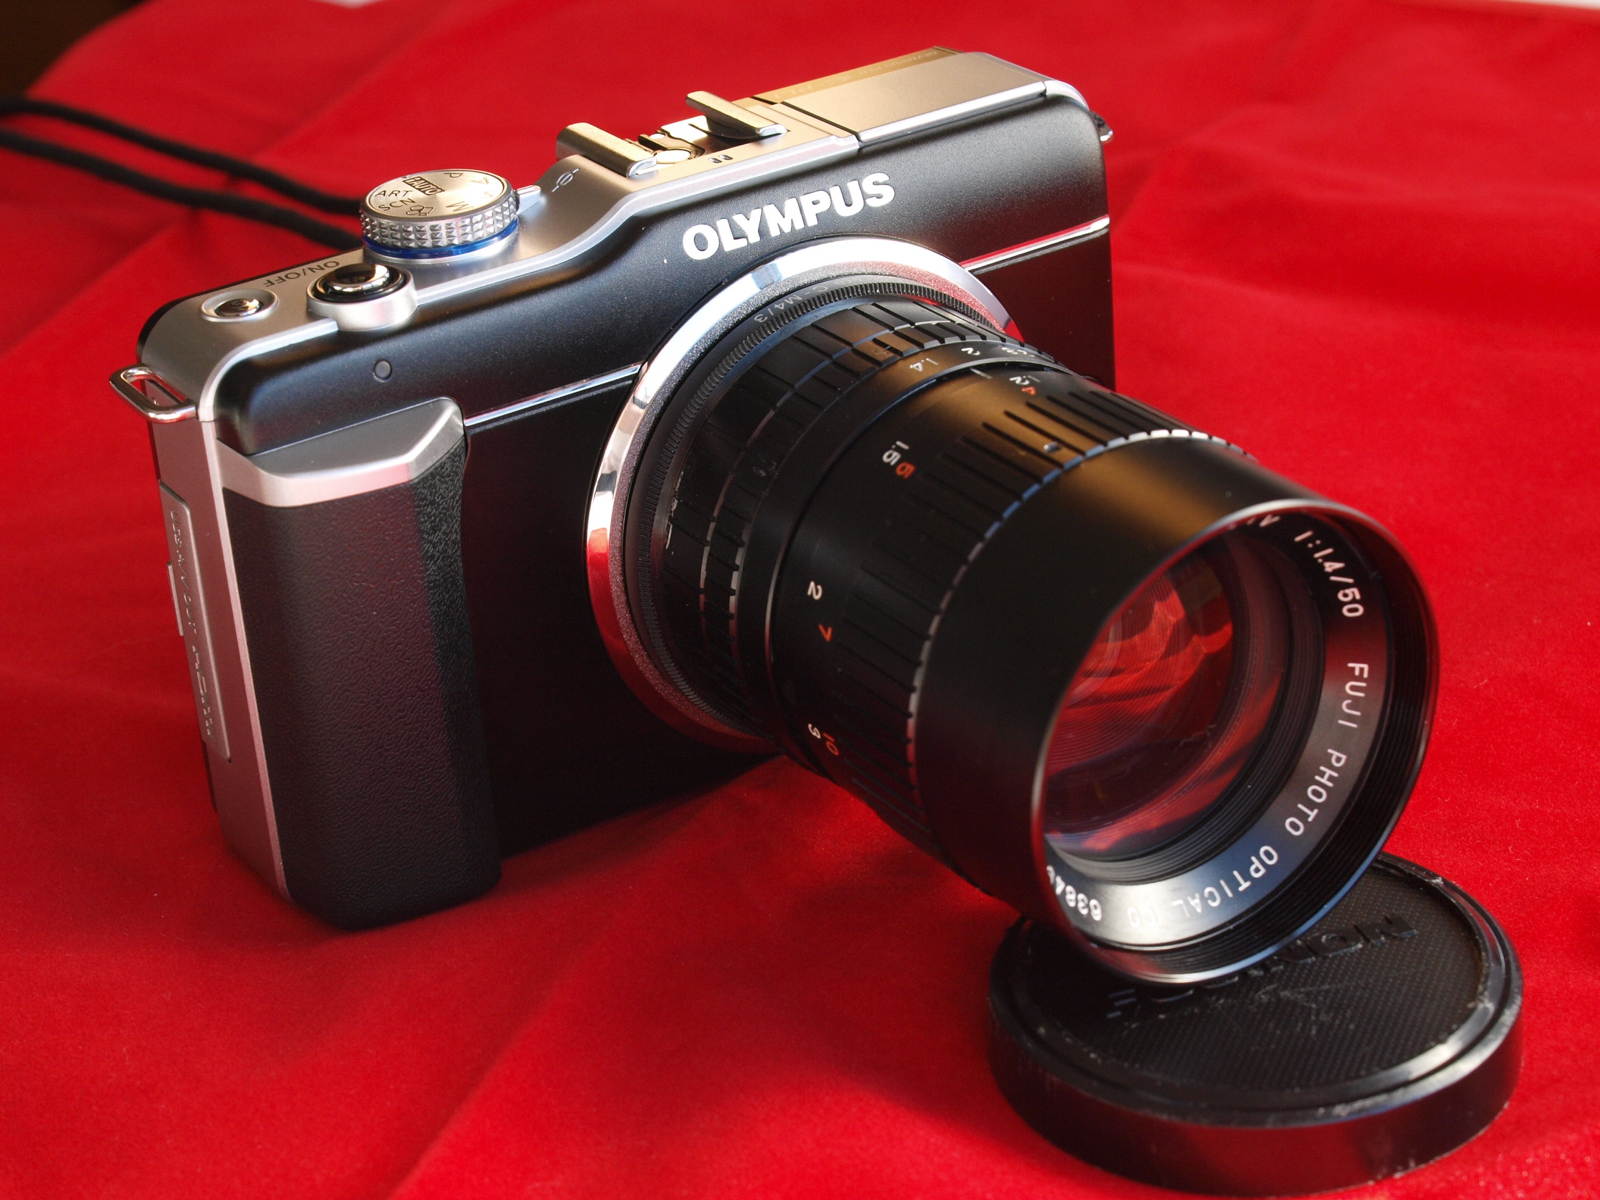 Fujinon-TV 50mm F1.4 lens on Olympus EPL-1